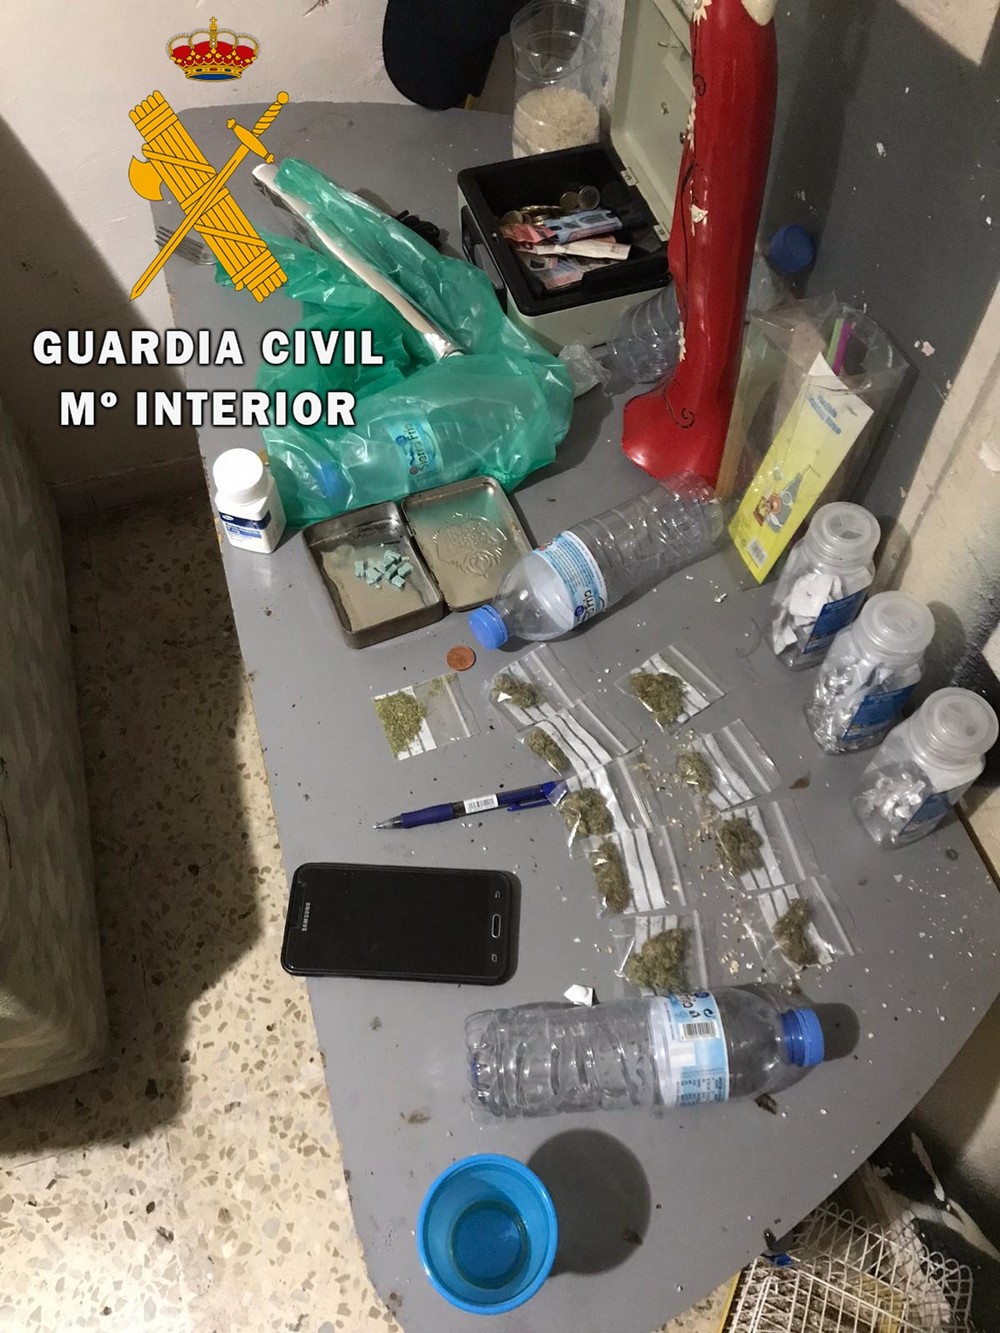 La Guardia Civil desmantela un activo punto de venta de drogas en Roquetas de Mar